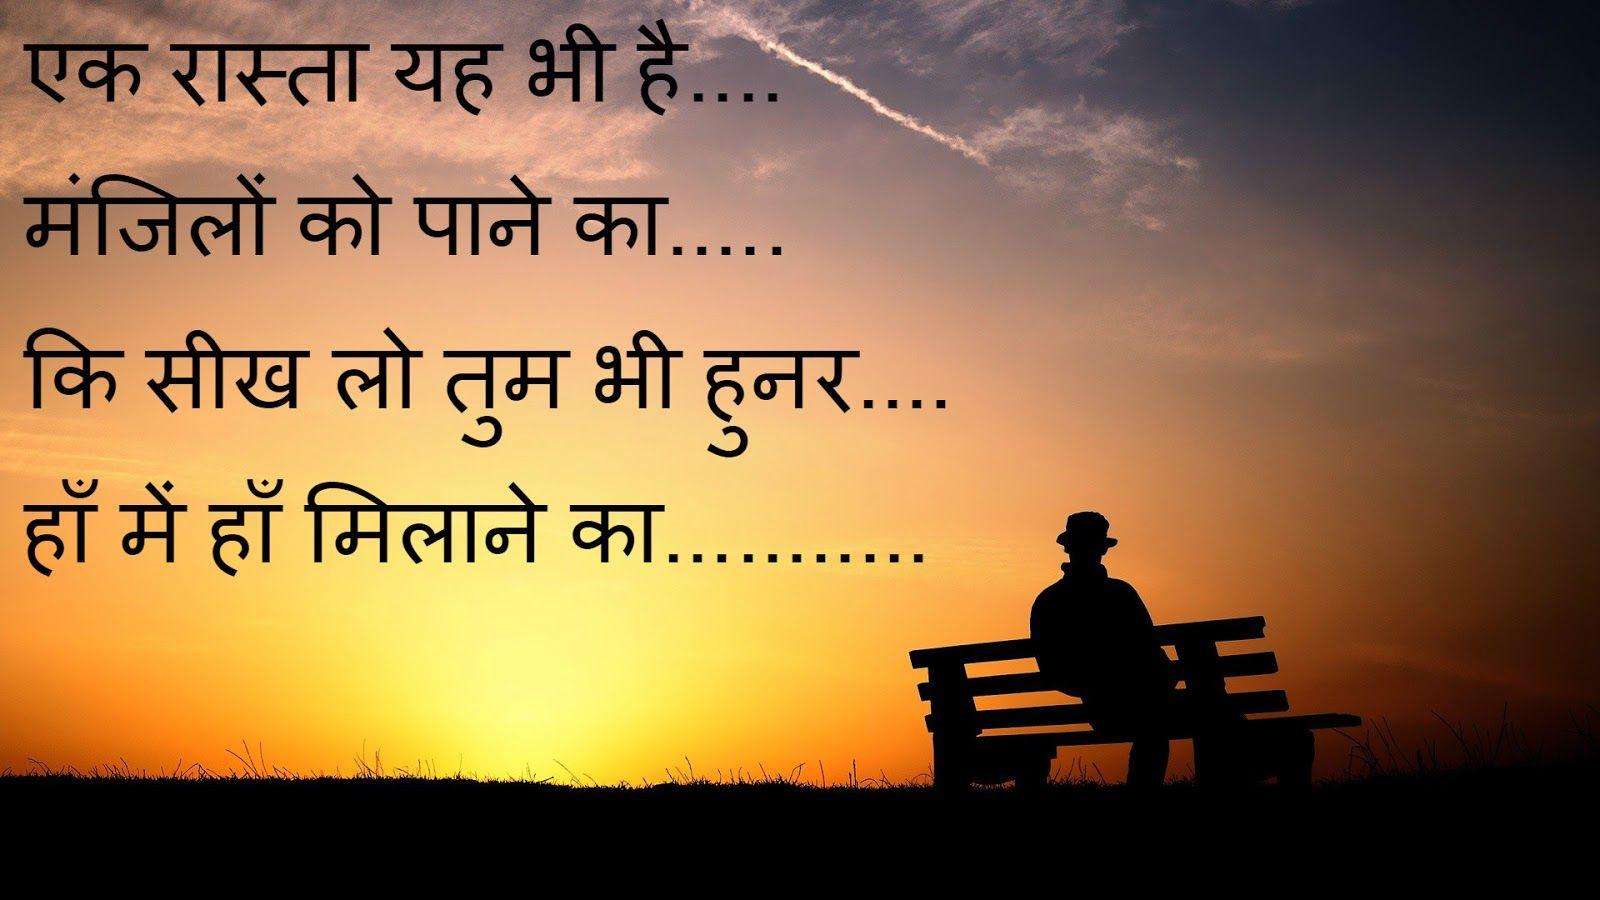 BEST Hindi Romantic Good Morning Love Shayari Images Pics Download